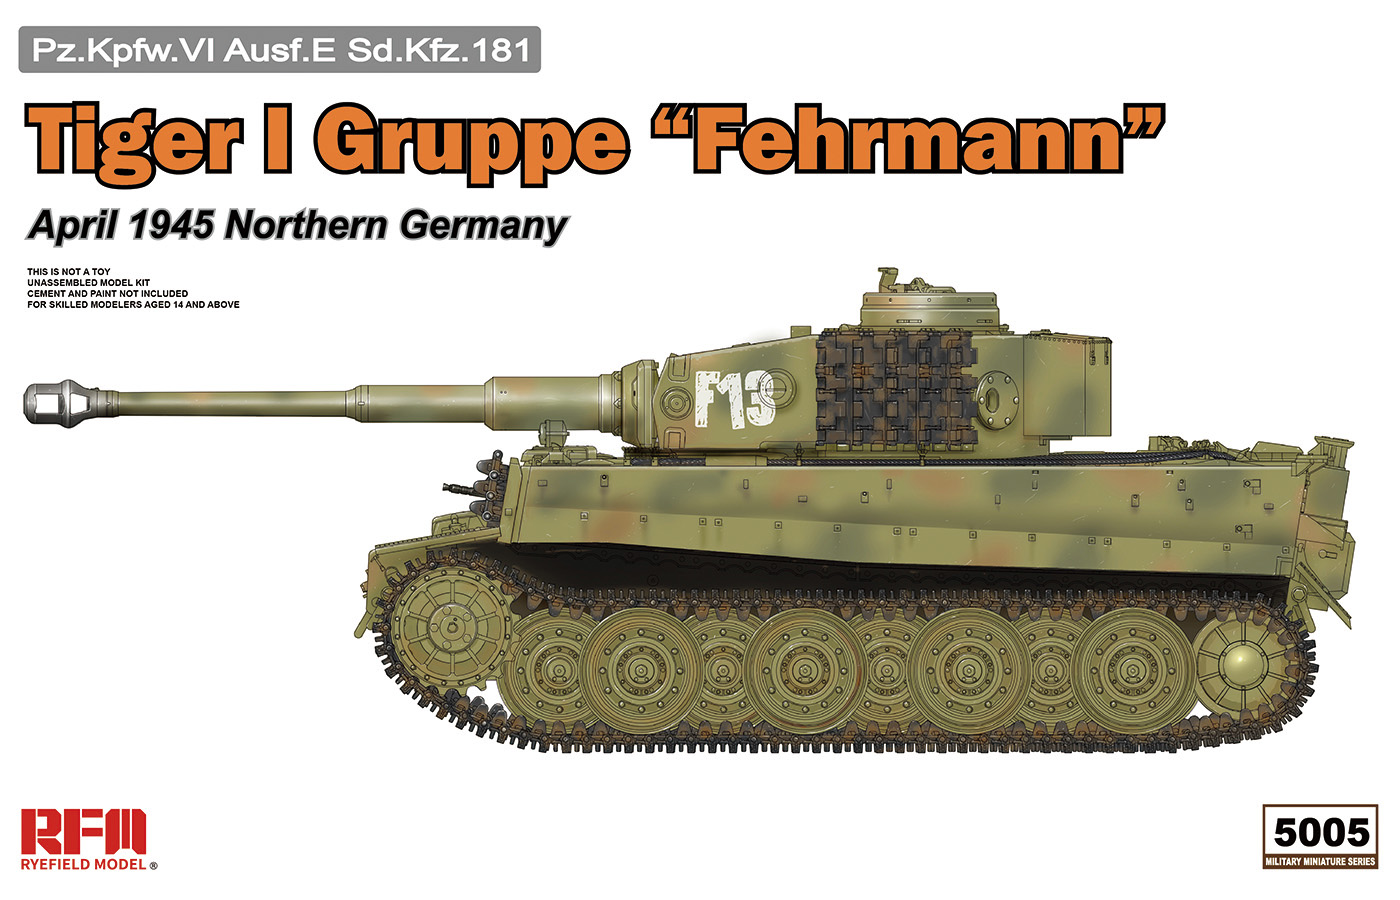 1/35 二战德国虎I重型坦克后期型"费赫曼战斗群" - 点击图像关闭